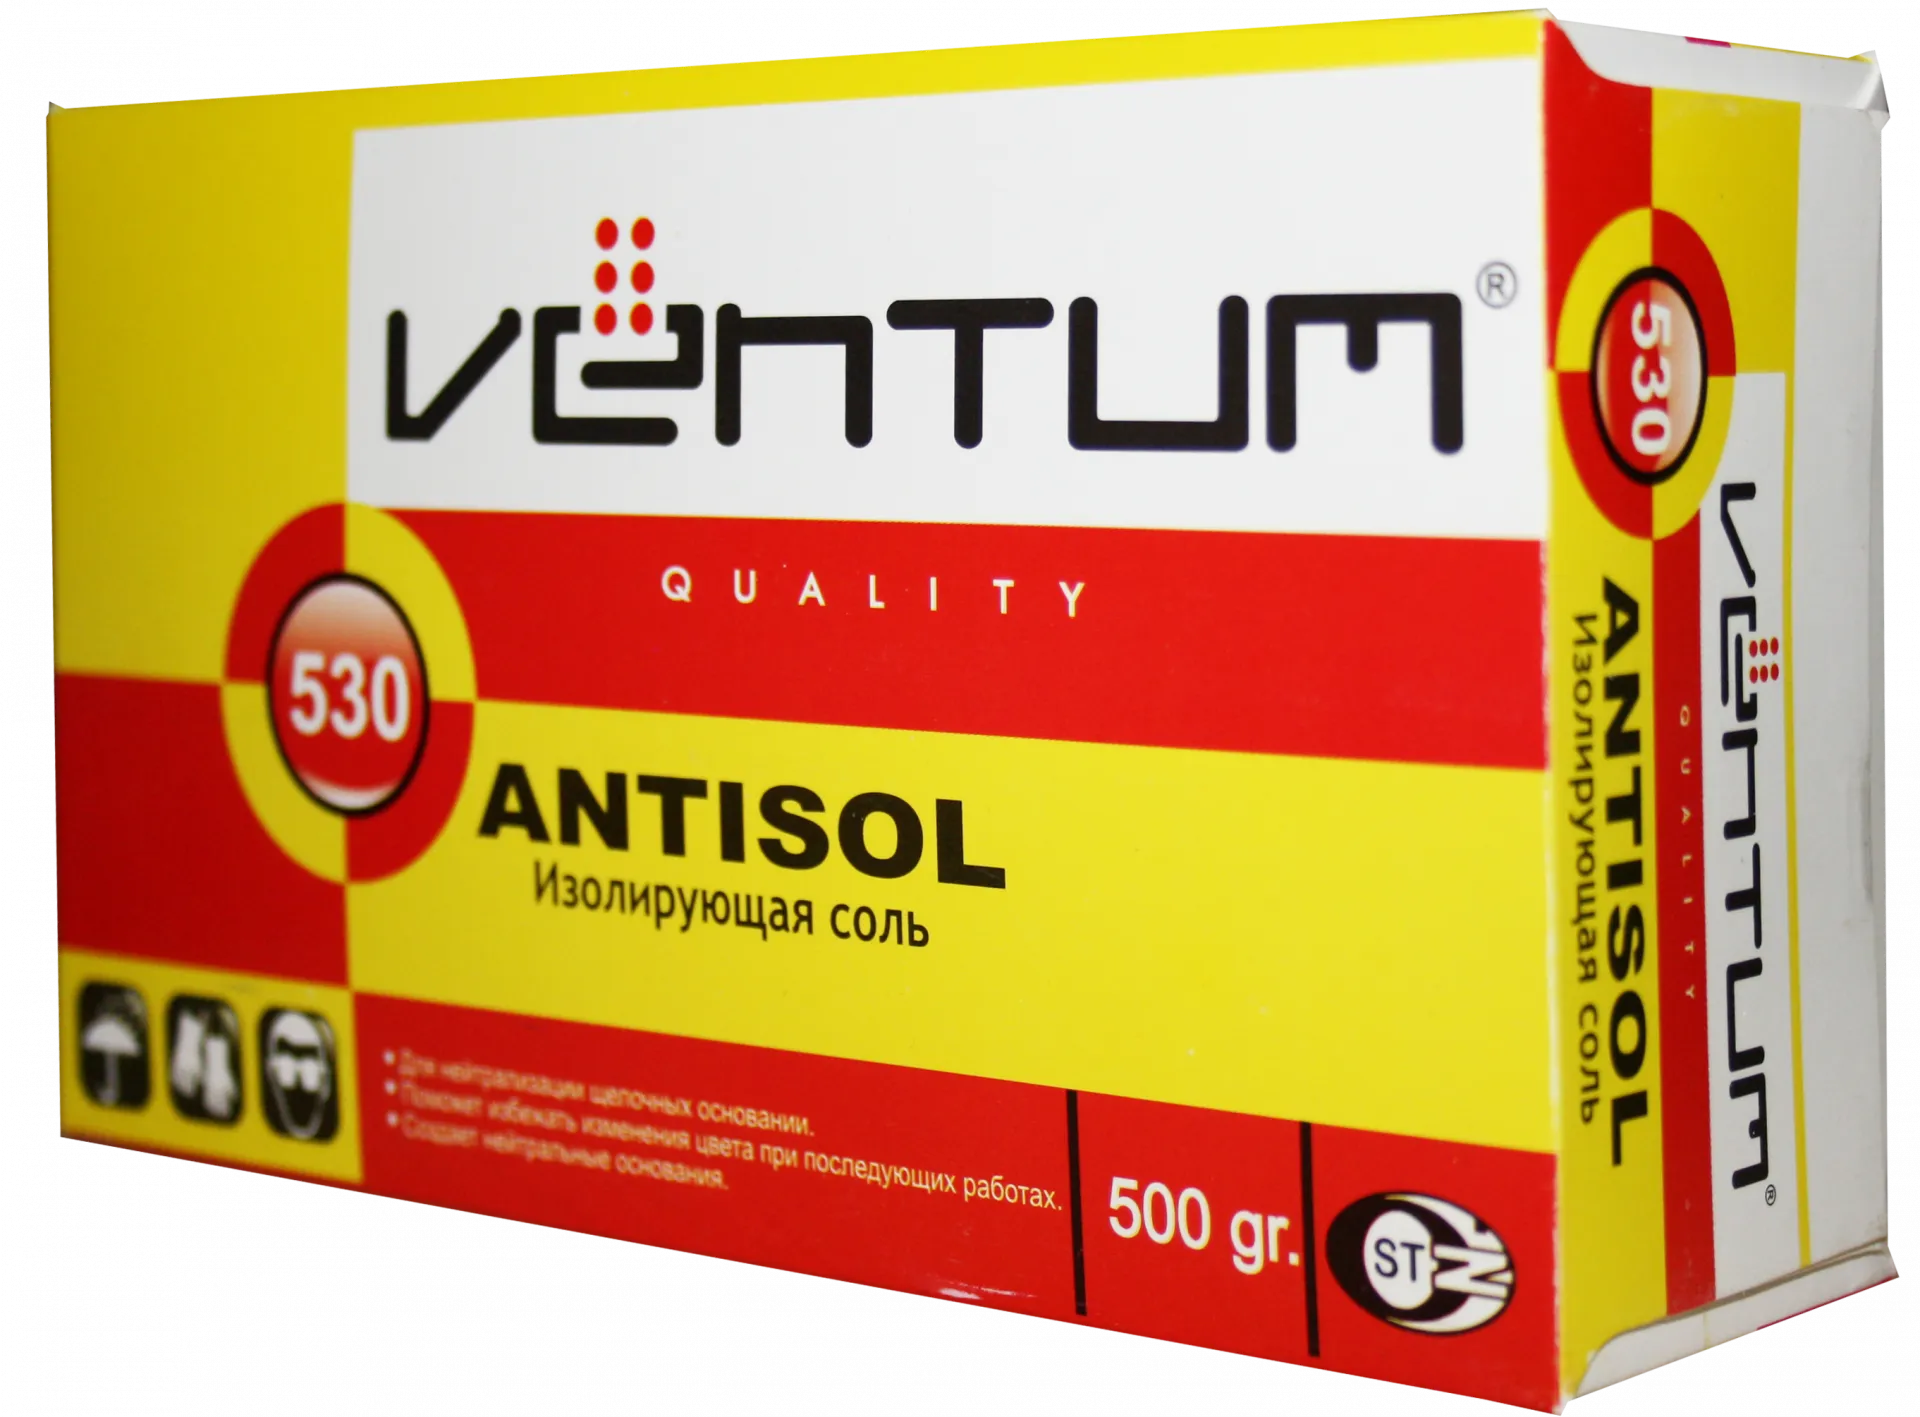 Izolyatsiya qiluvchi tuz Ventum ANTISOL - 530 500 gr#1